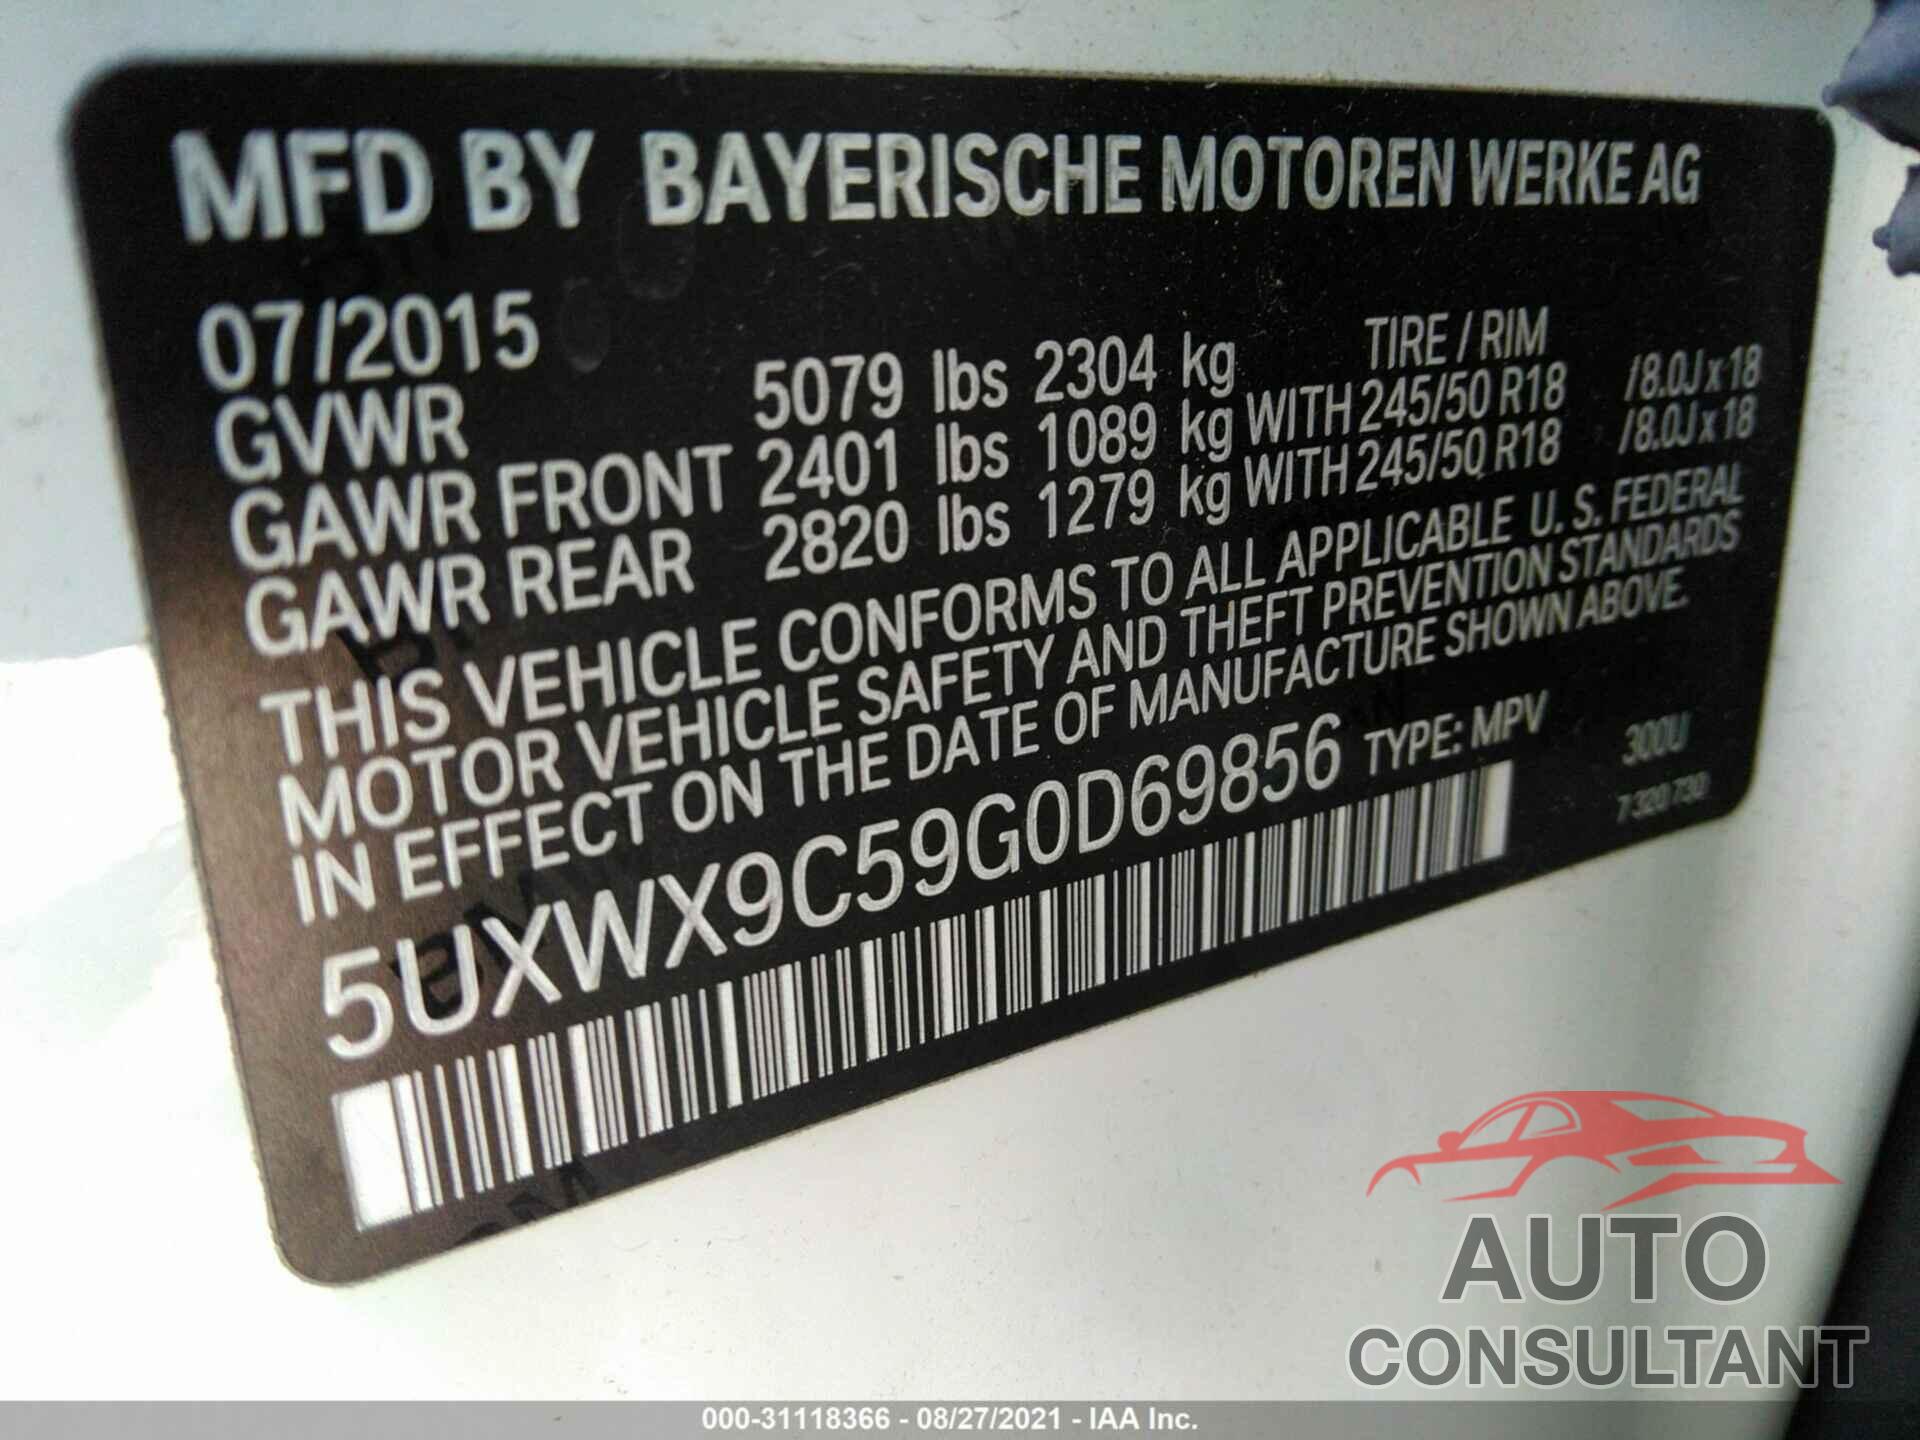 BMW X3 2016 - 5UXWX9C59G0D69856